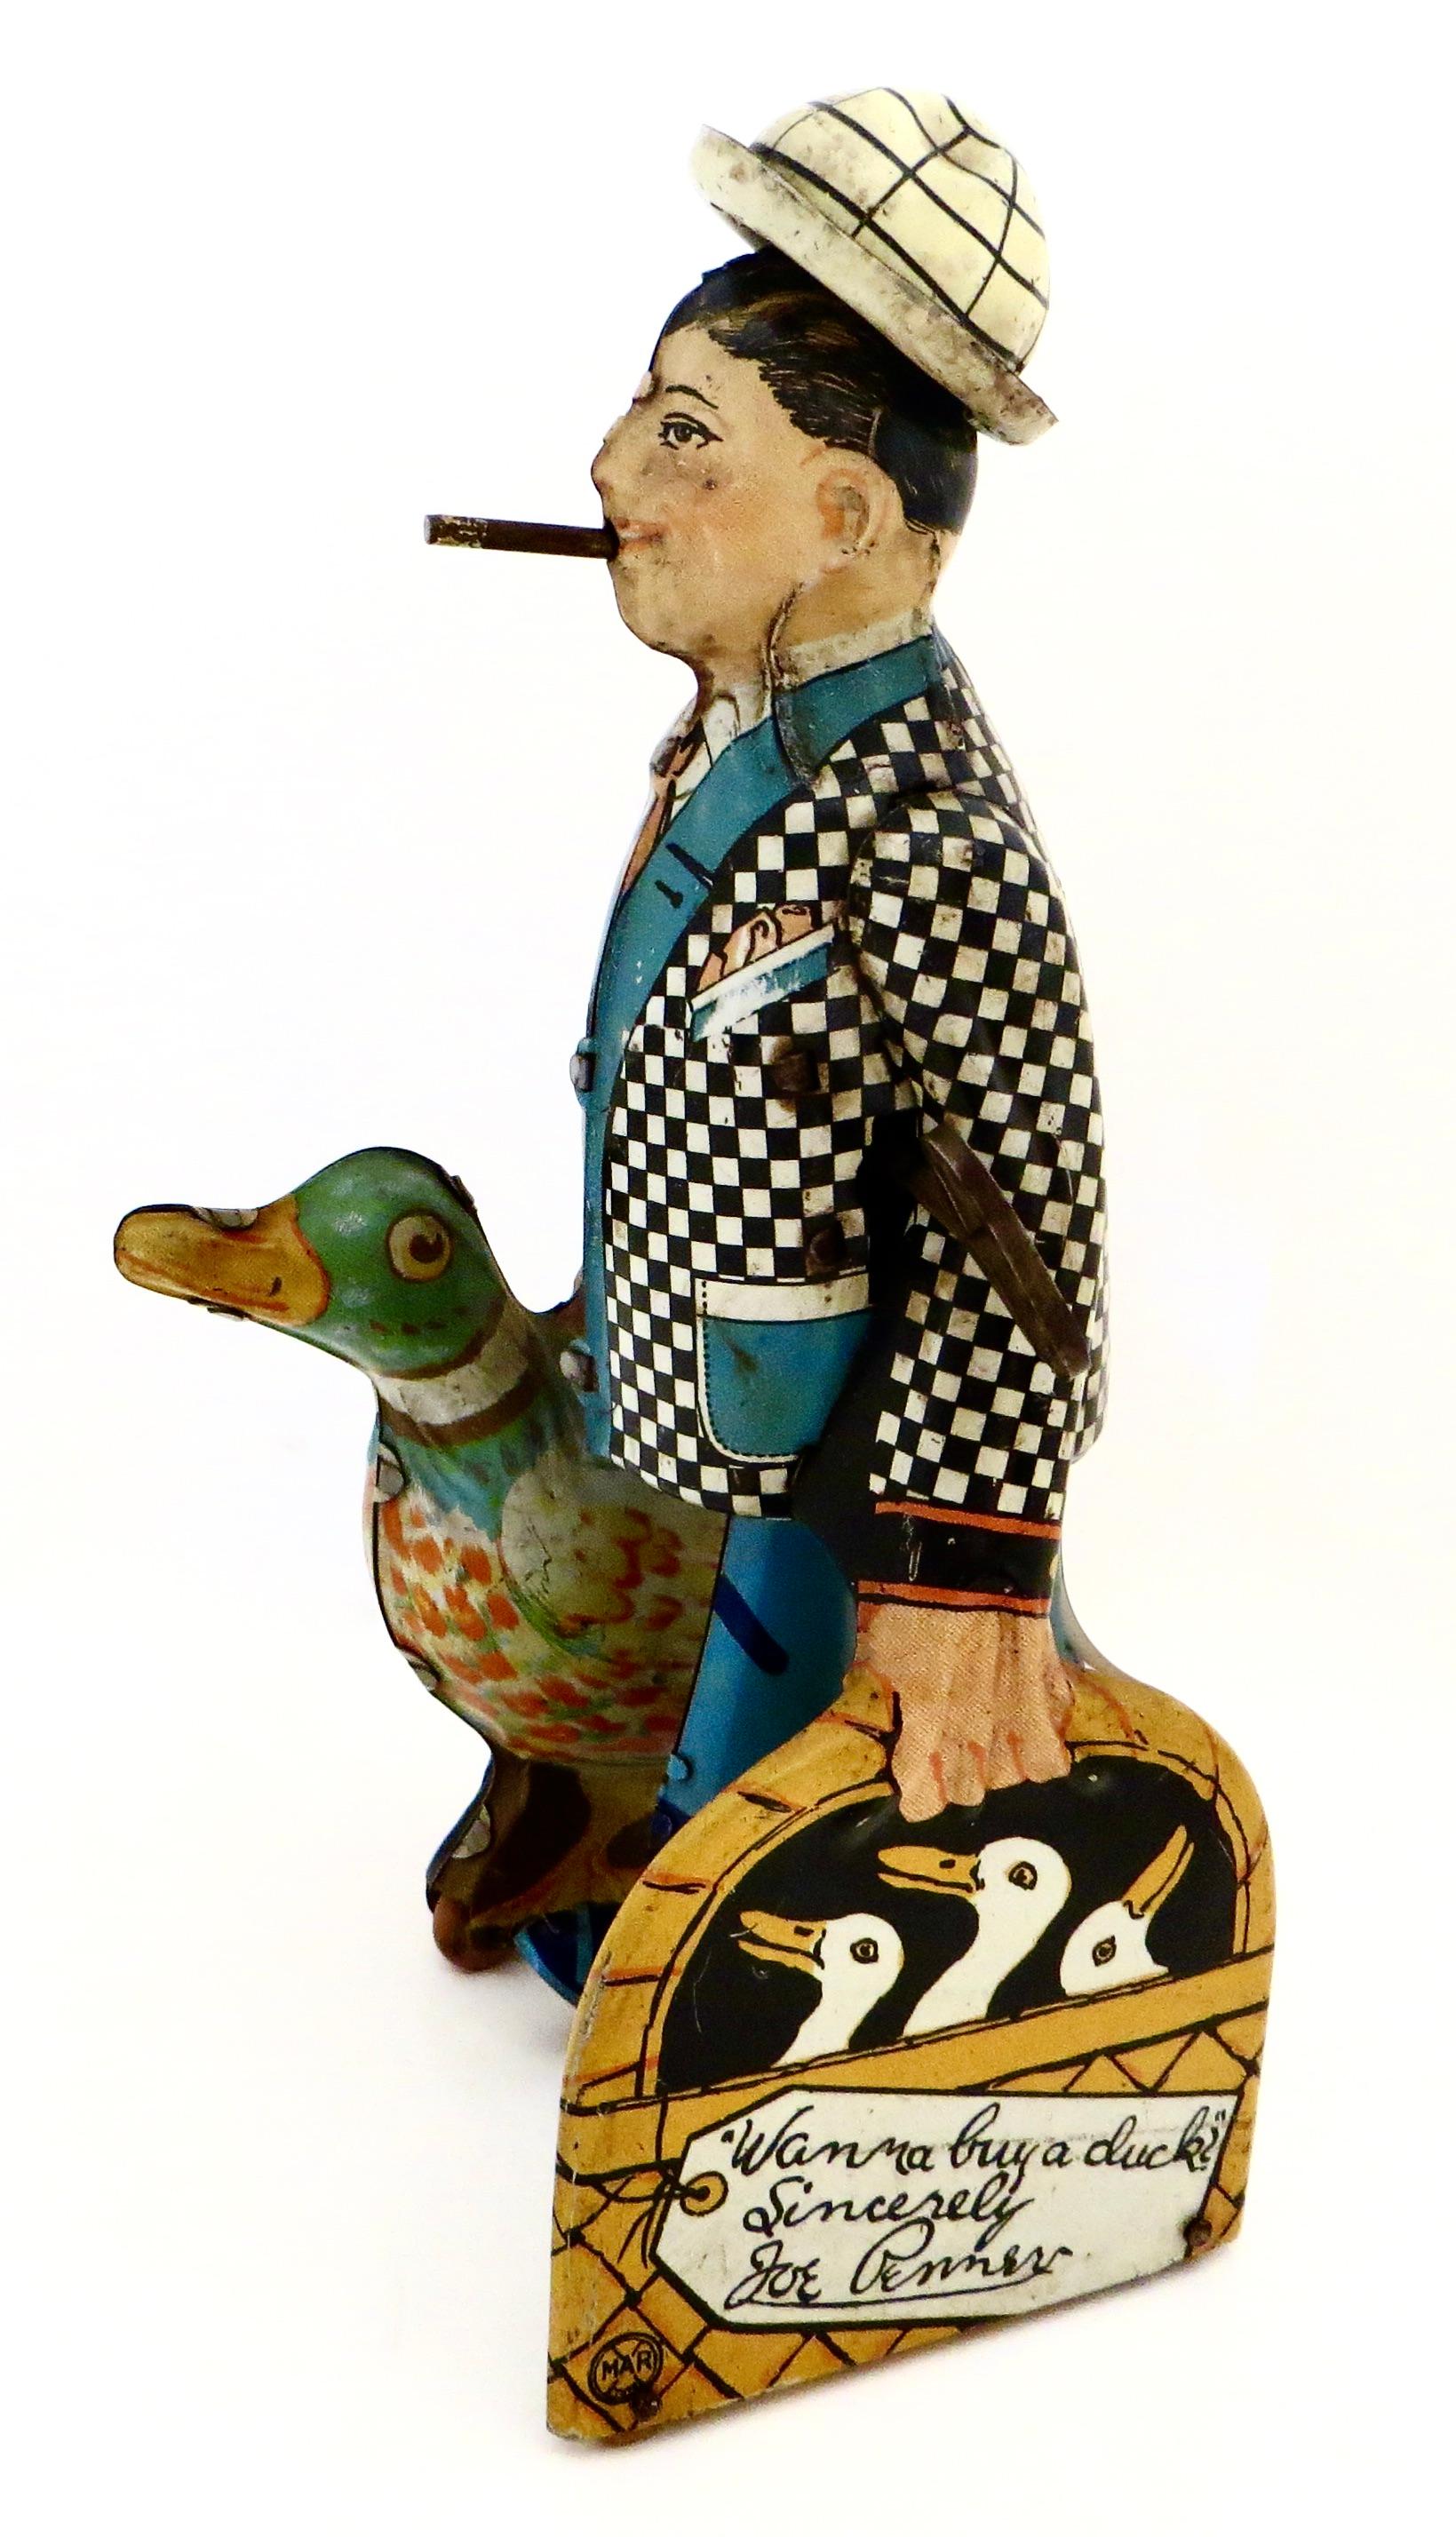 Fabelhaftes amerikanisches Vintage-Aufziehspielzeug aus Zinn mit angebrachtem Schlüssel und Uhrwerkmechanismus, wobei die Figur (Joe Penner) beim Aufziehen ziellos über den Boden watschelt, wobei der Hut in der Luft fliegt und die berüchtigte